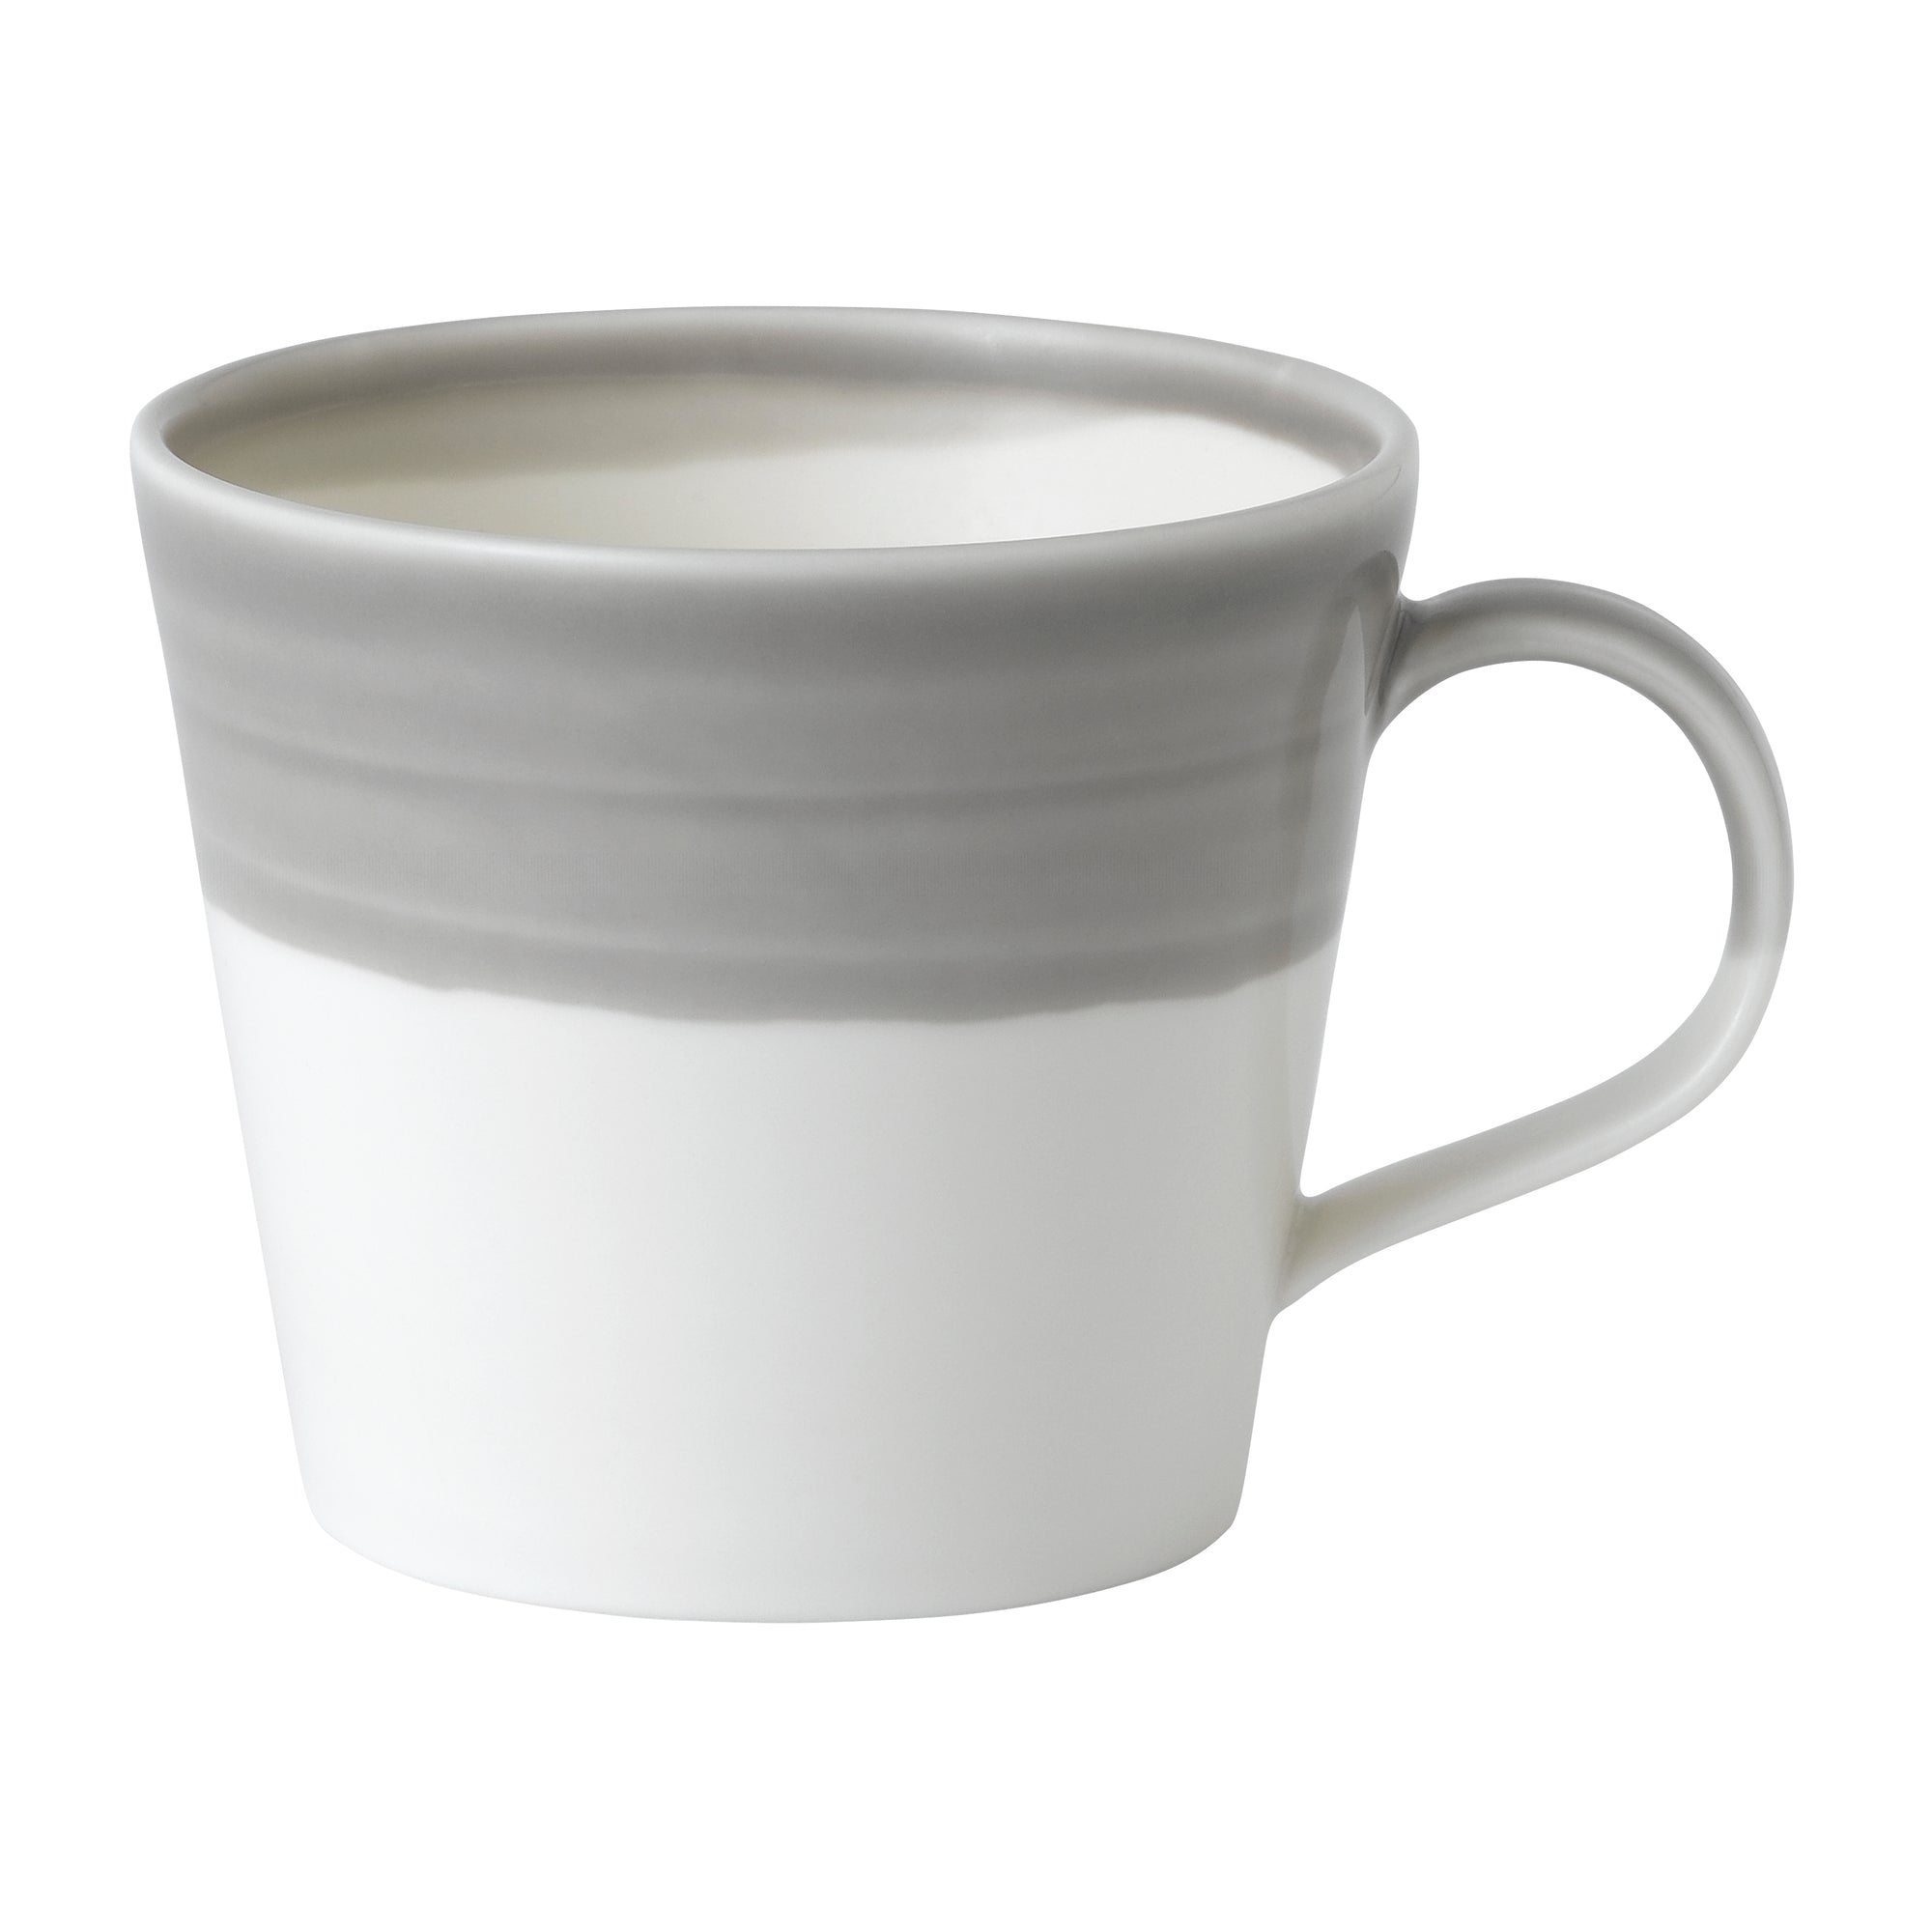 Royal Doulton Coffee Studio Mug 400ml - Light Grey